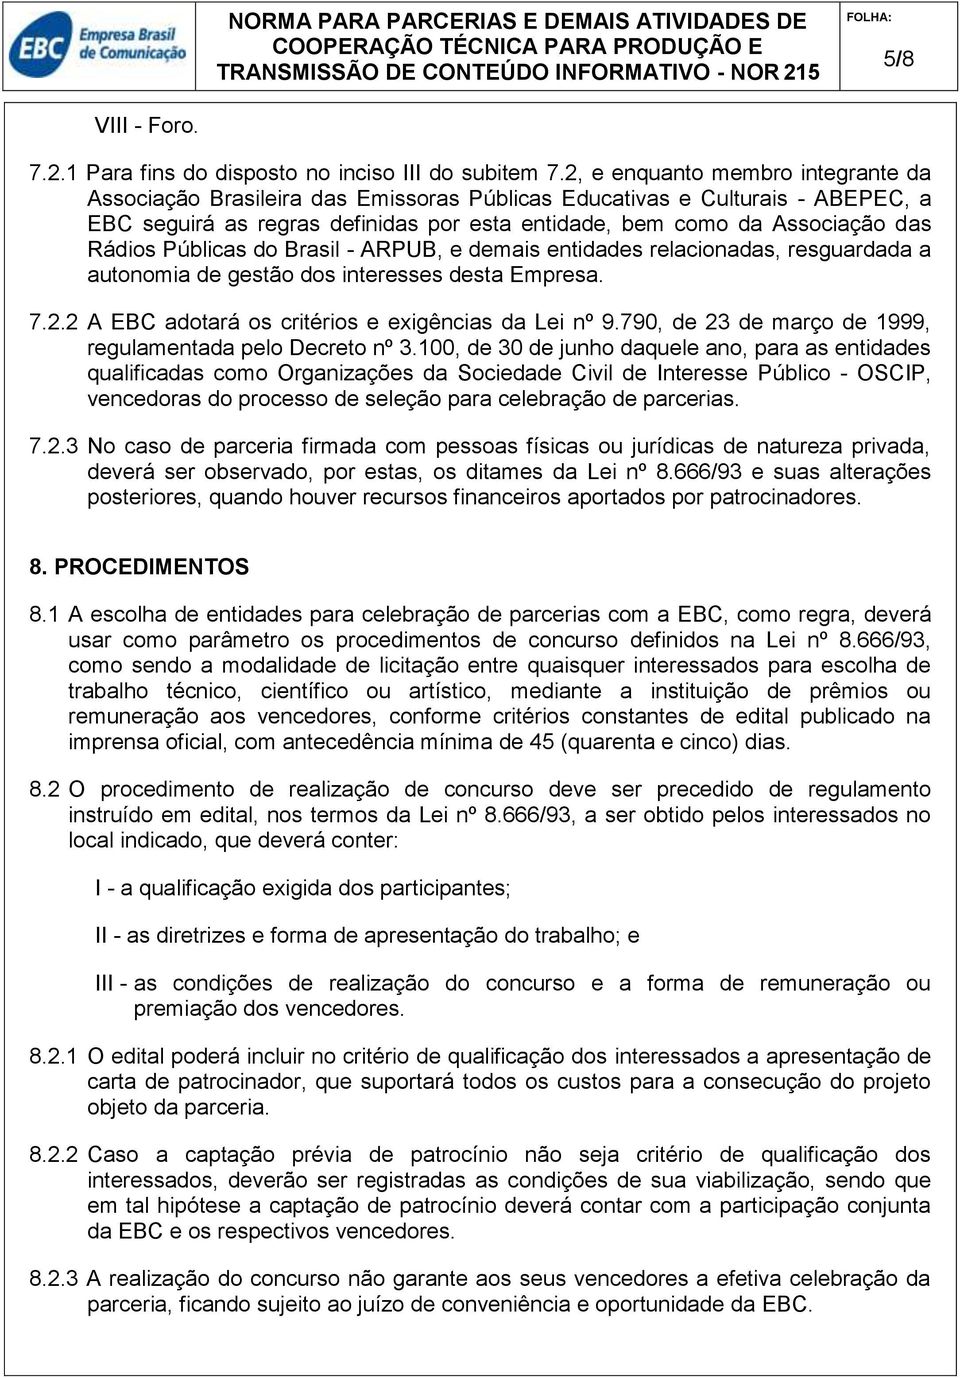 Públicas do Brasil - ARPUB, e demais entidades relacionadas, resguardada a autonomia de gestão dos interesses desta Empresa. 7.2.2 A EBC adotará os critérios e exigências da Lei nº 9.